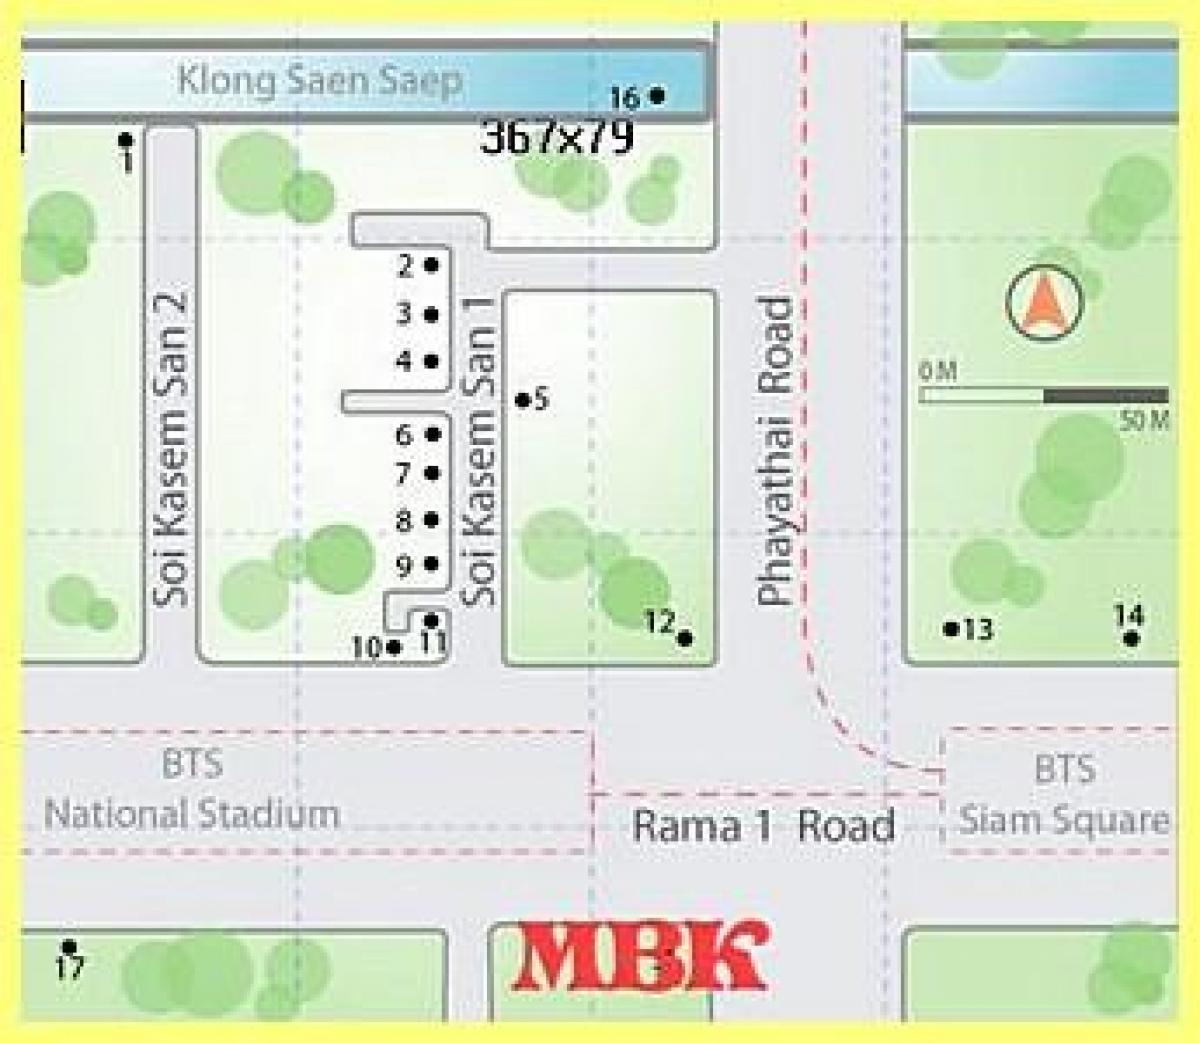 mbk shopping mall in bangkok map